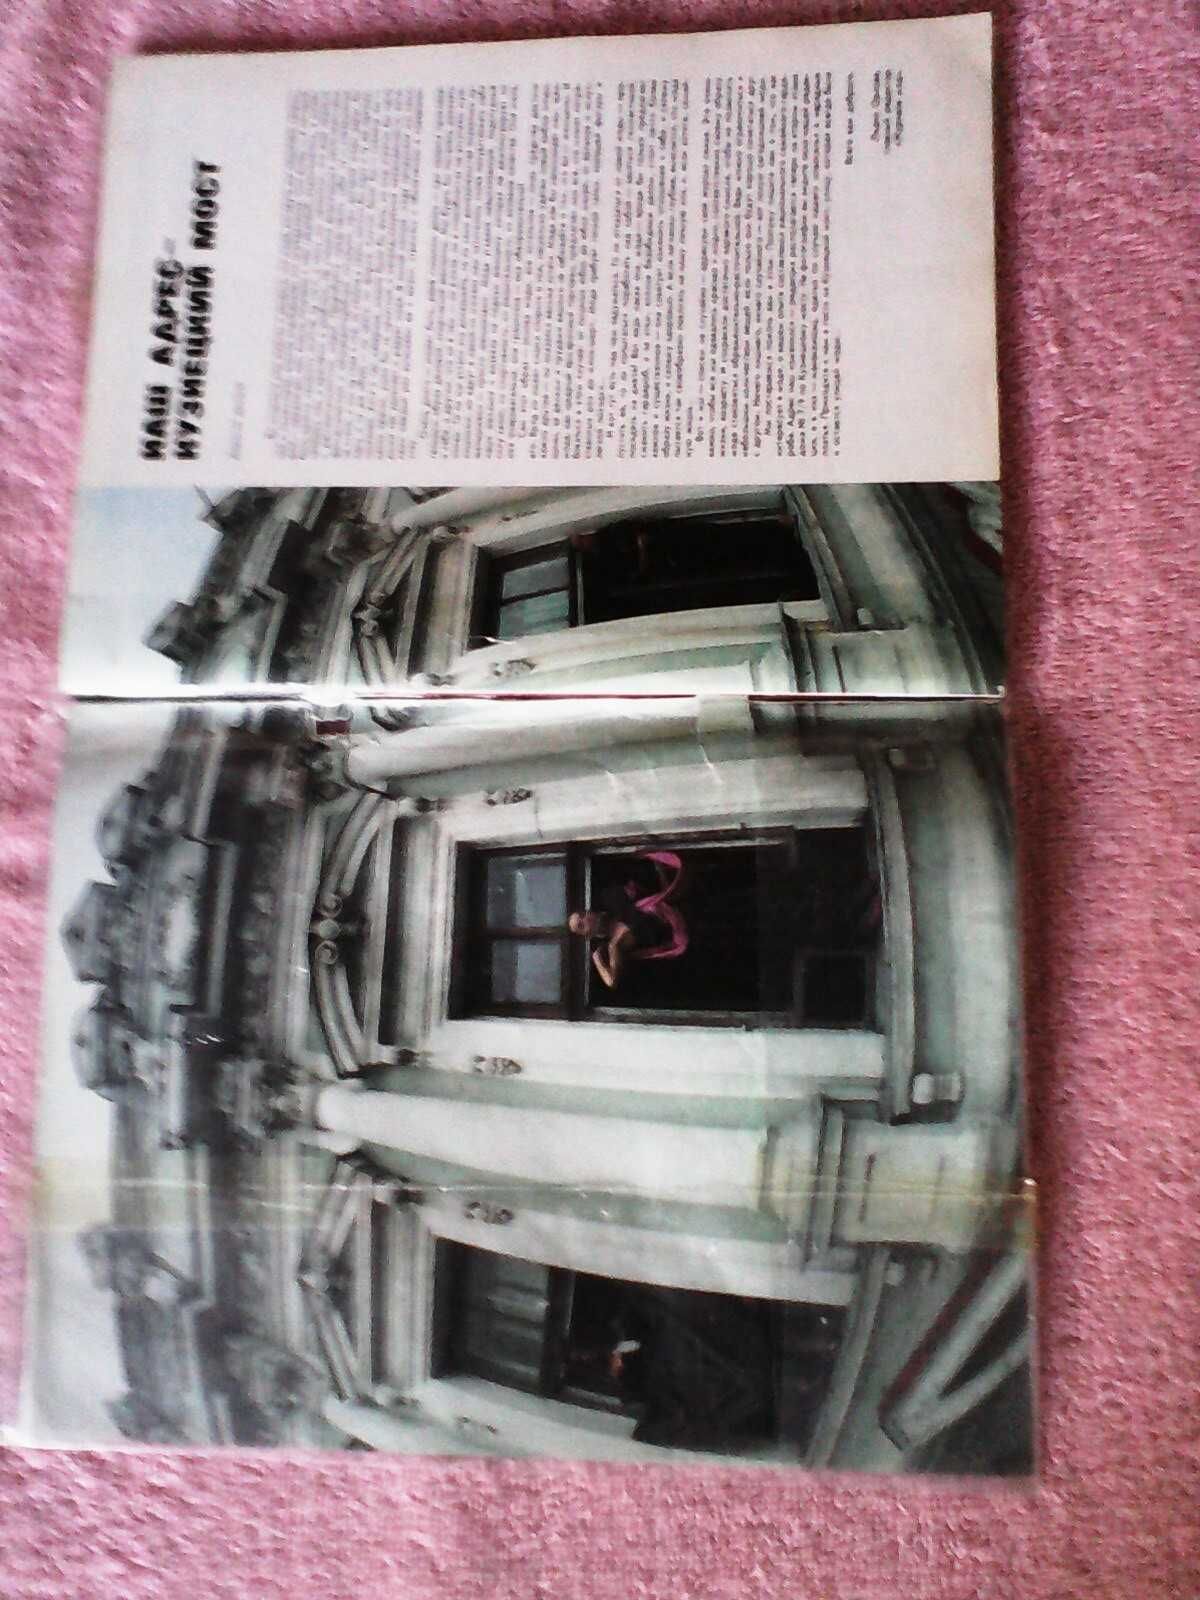 Продам шесть номеров "Журнал МОД" Москва  1988г с листами выкроек.